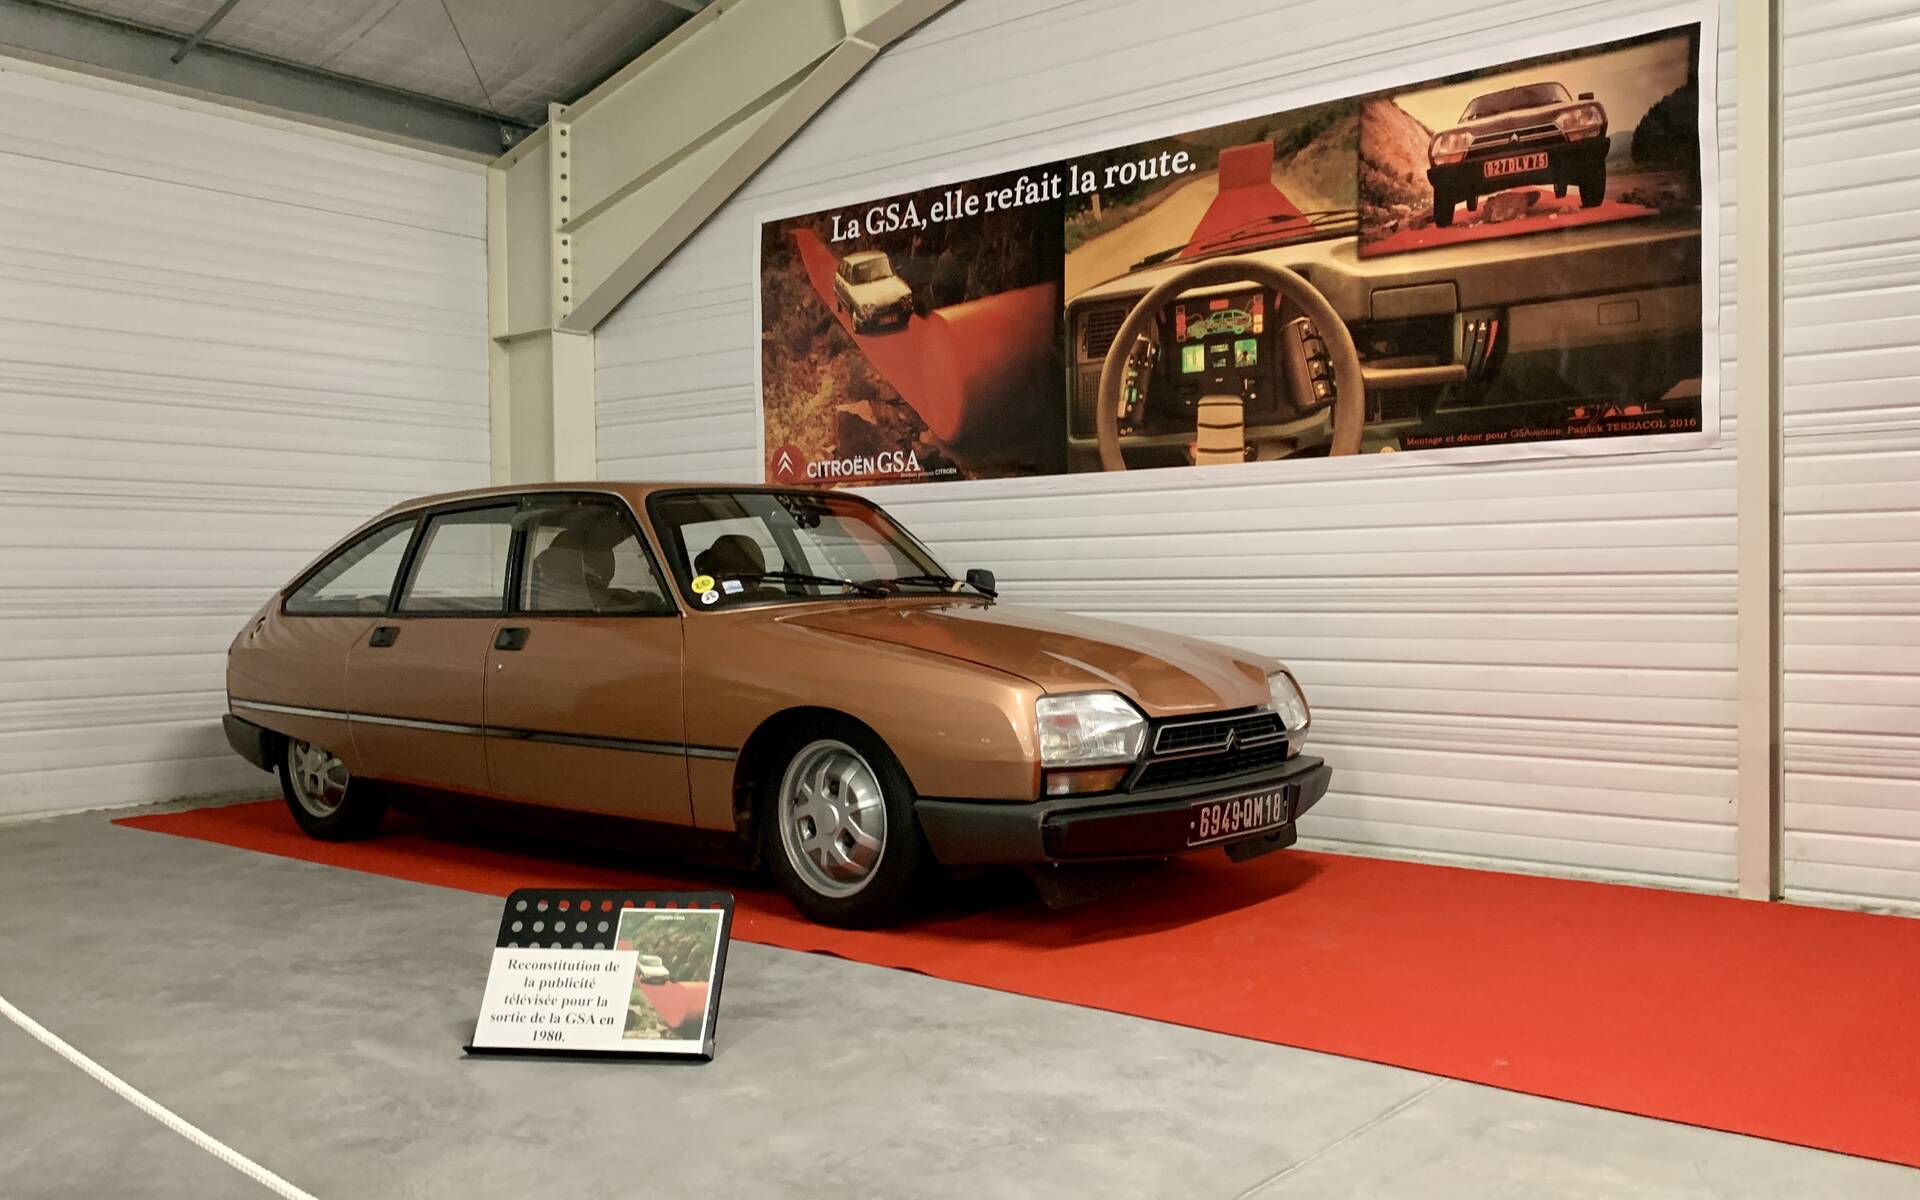 32 - Photos: plus de 100 Citroën d'exception réunies dans un musée en France 543103-photos-plus-de-100-citroen-d-exception-reunies-dans-un-musee-en-france